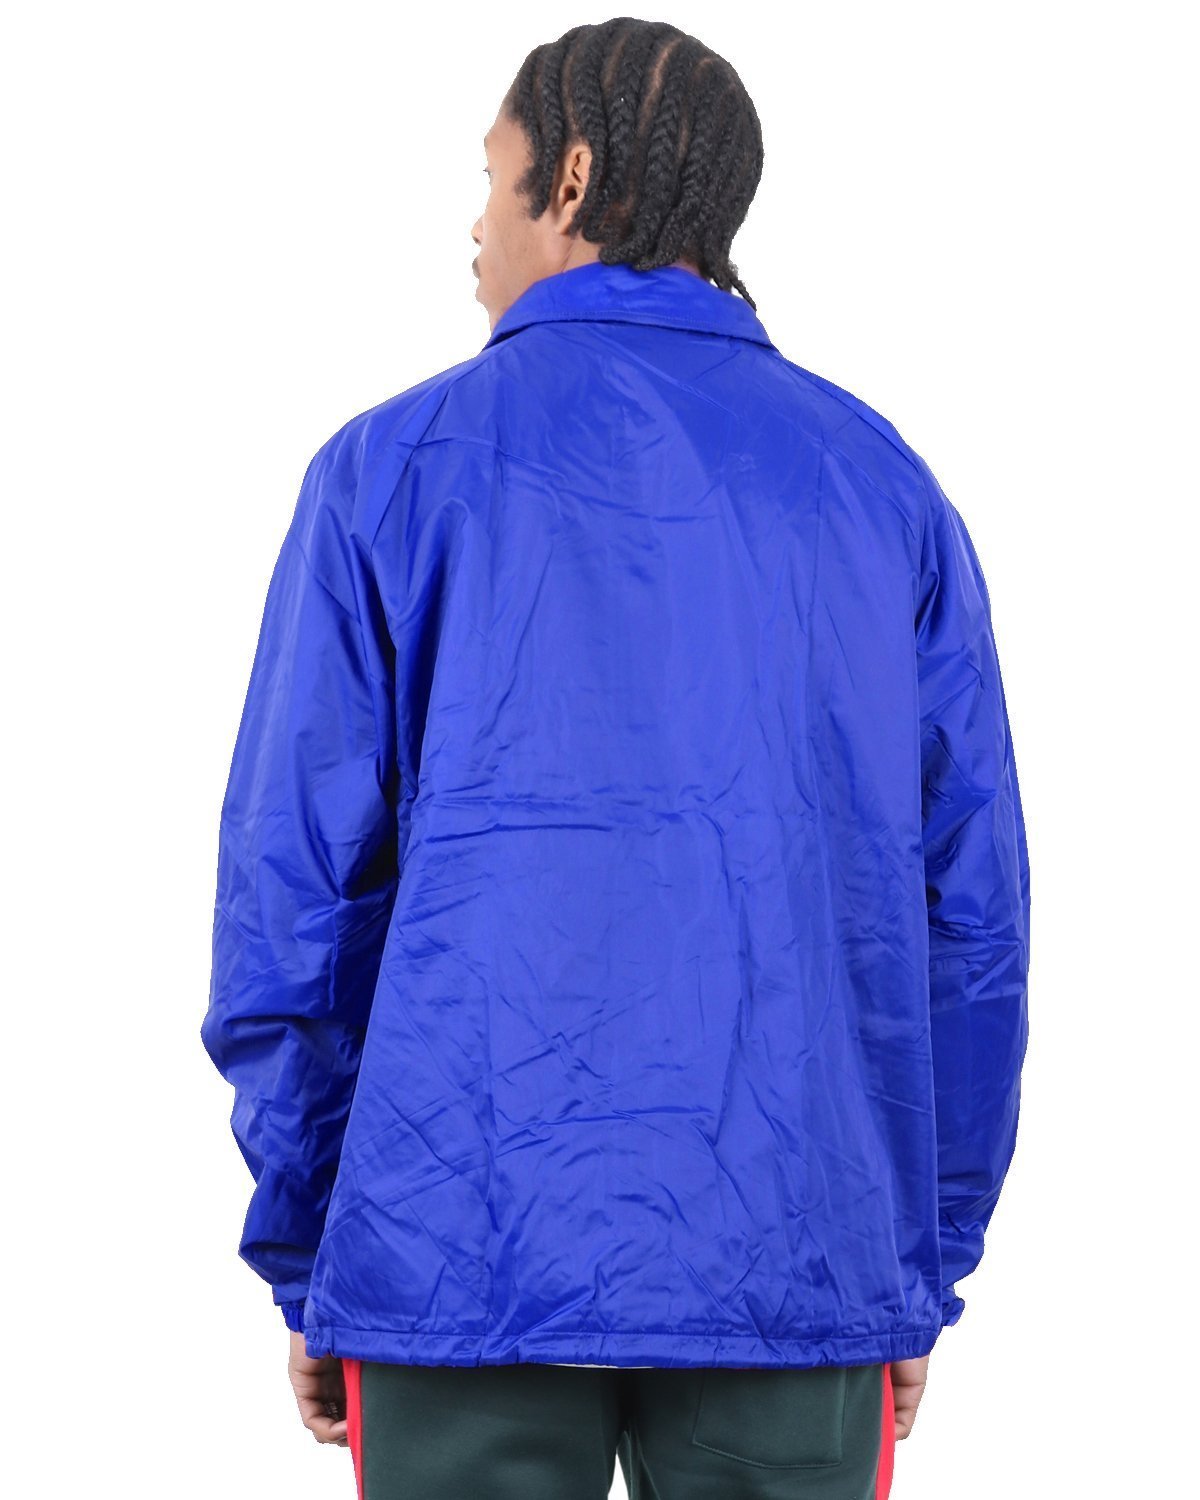 blue windbreaker jacket